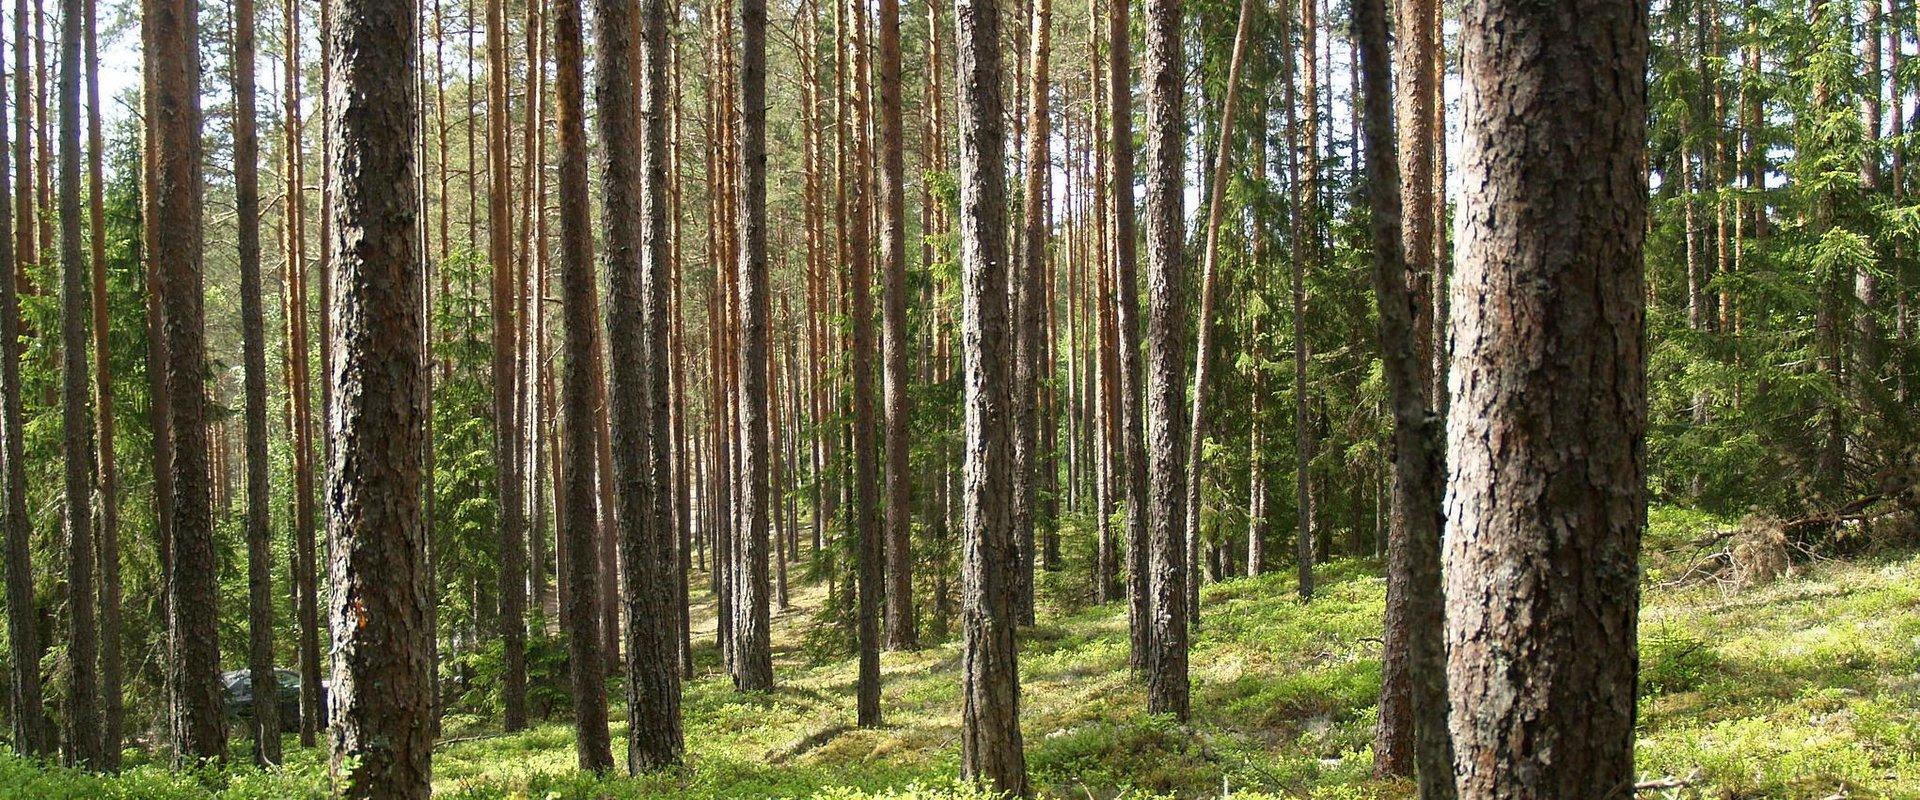 Ruunaraipe Dünen ist eine beliebte Naturdestination für Einwohner von Viljandi, um in die Natur zu gehen. Neben der schönen Landschaft bietet die Umge